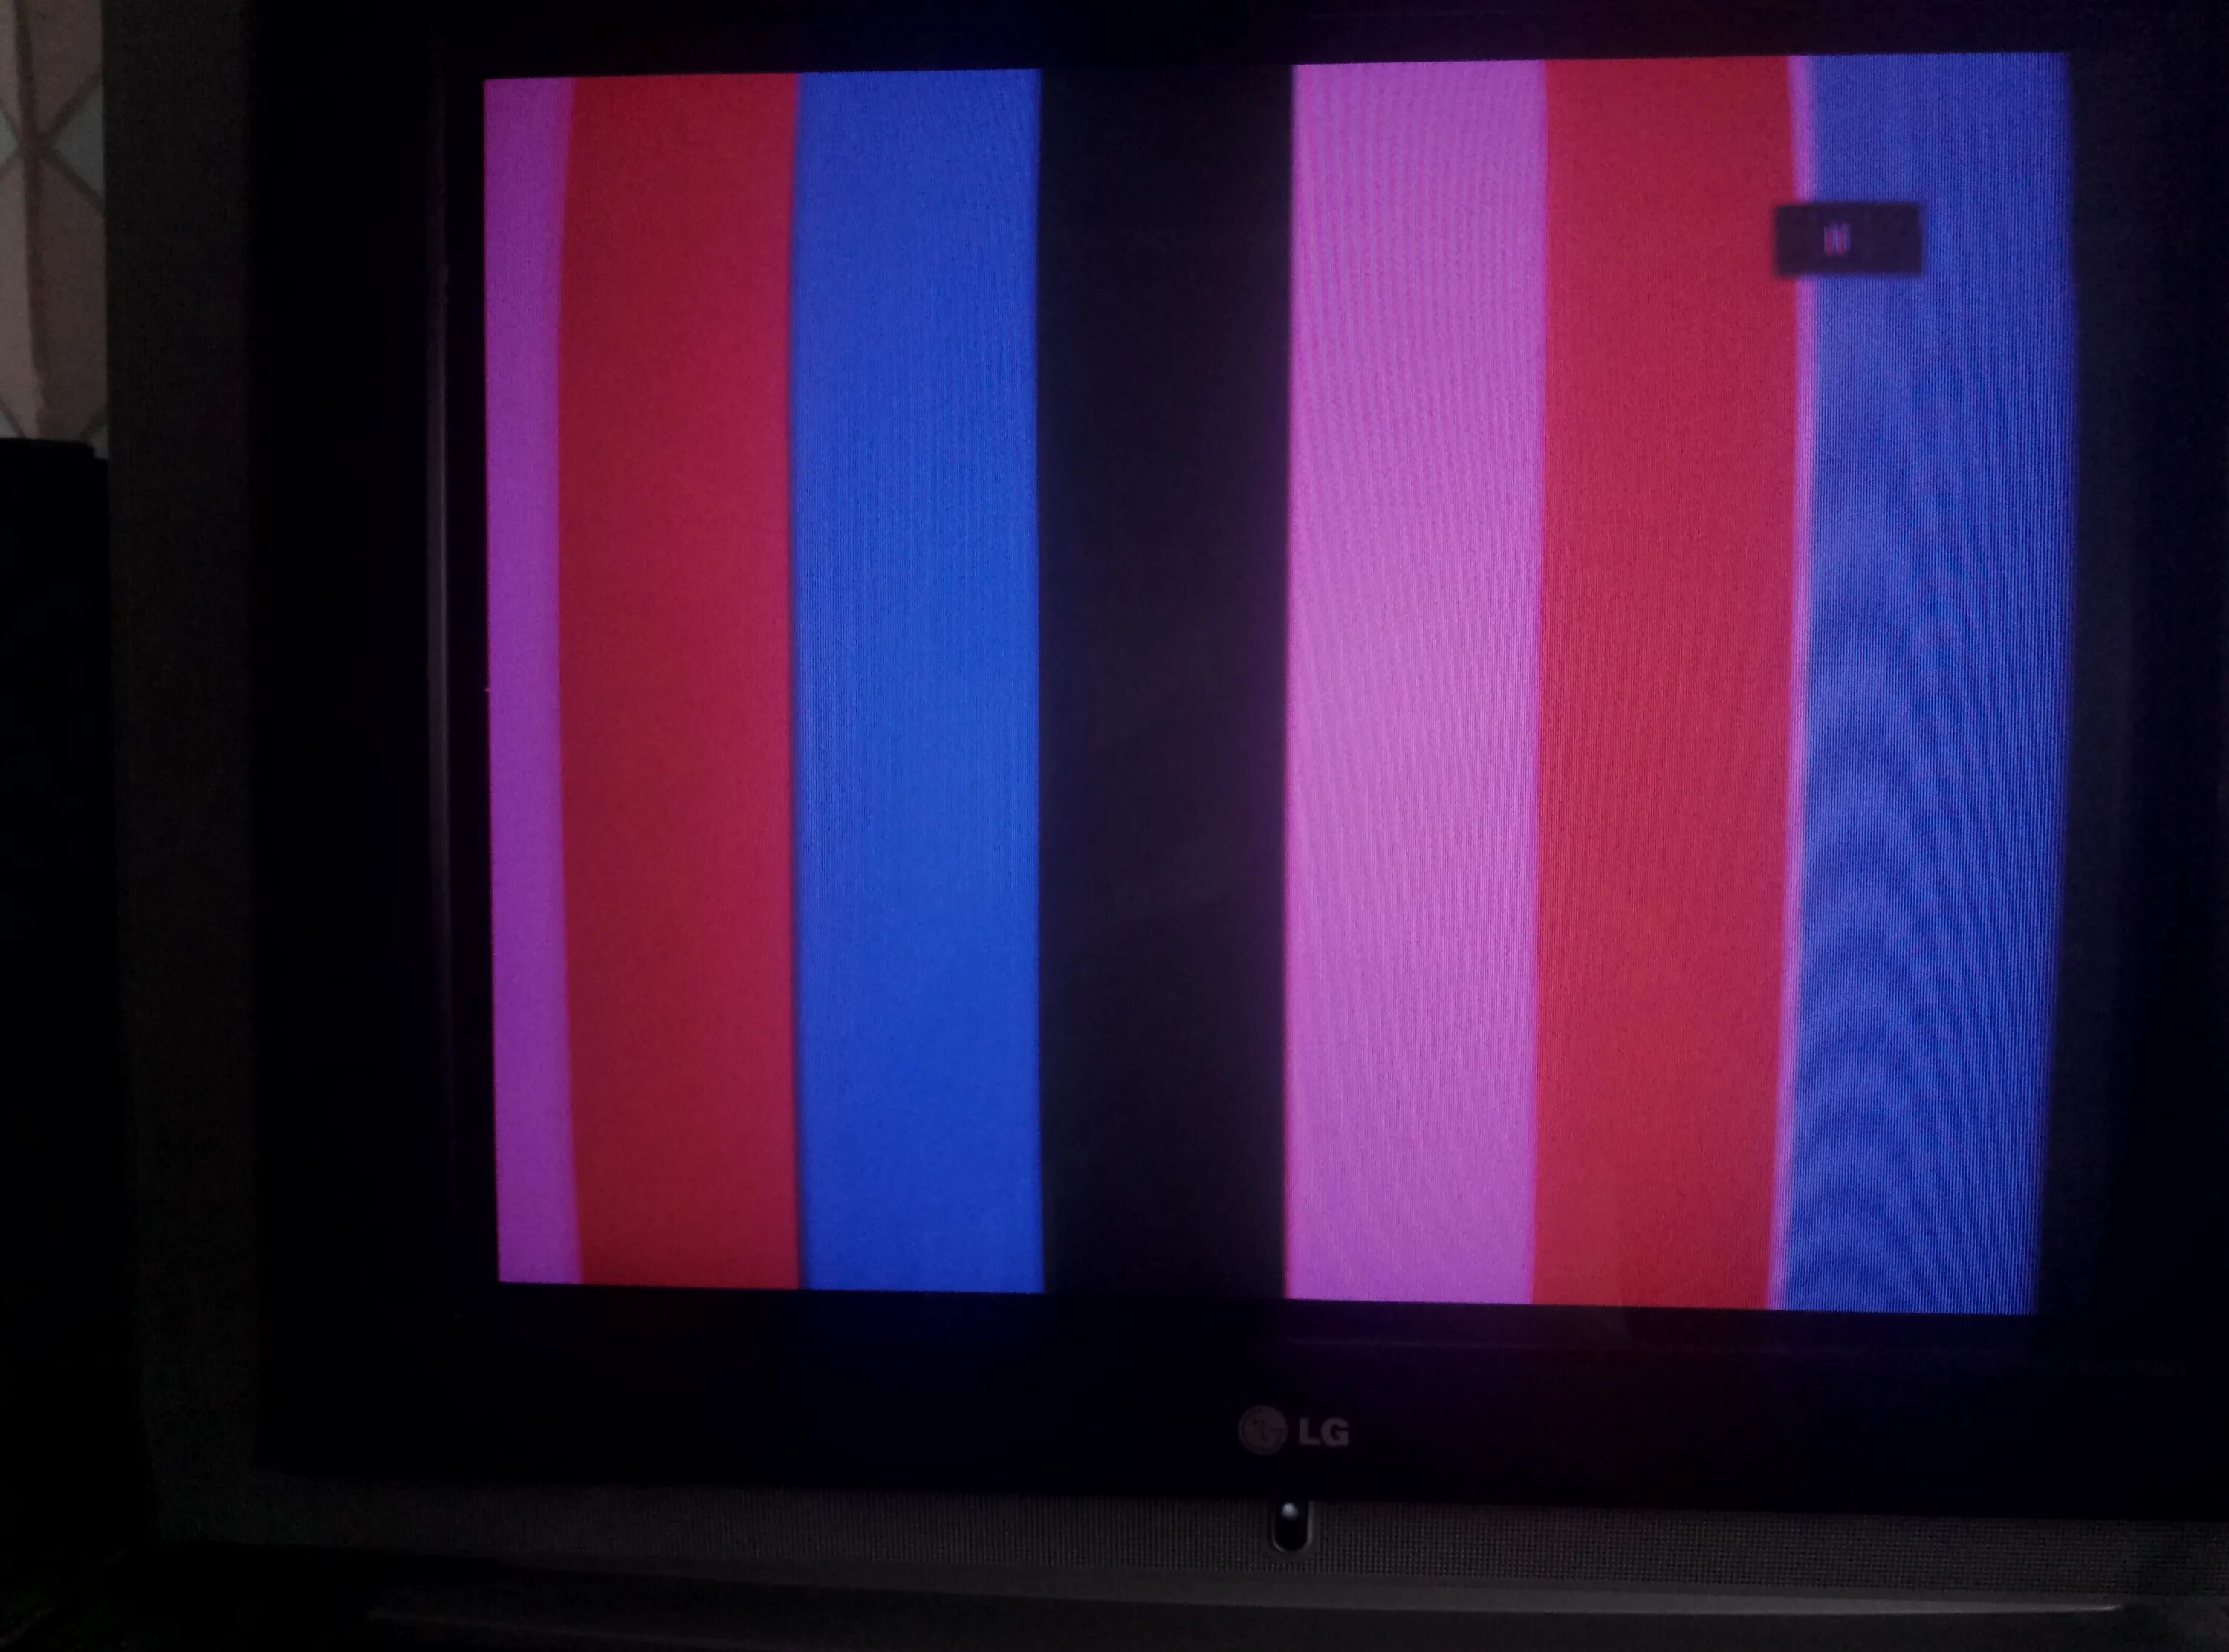 Телевизор lg синие цвета. LG 29fs6rnx. LG 29 кинескоп. Шасси:cw71a. LG 29fx6anx.